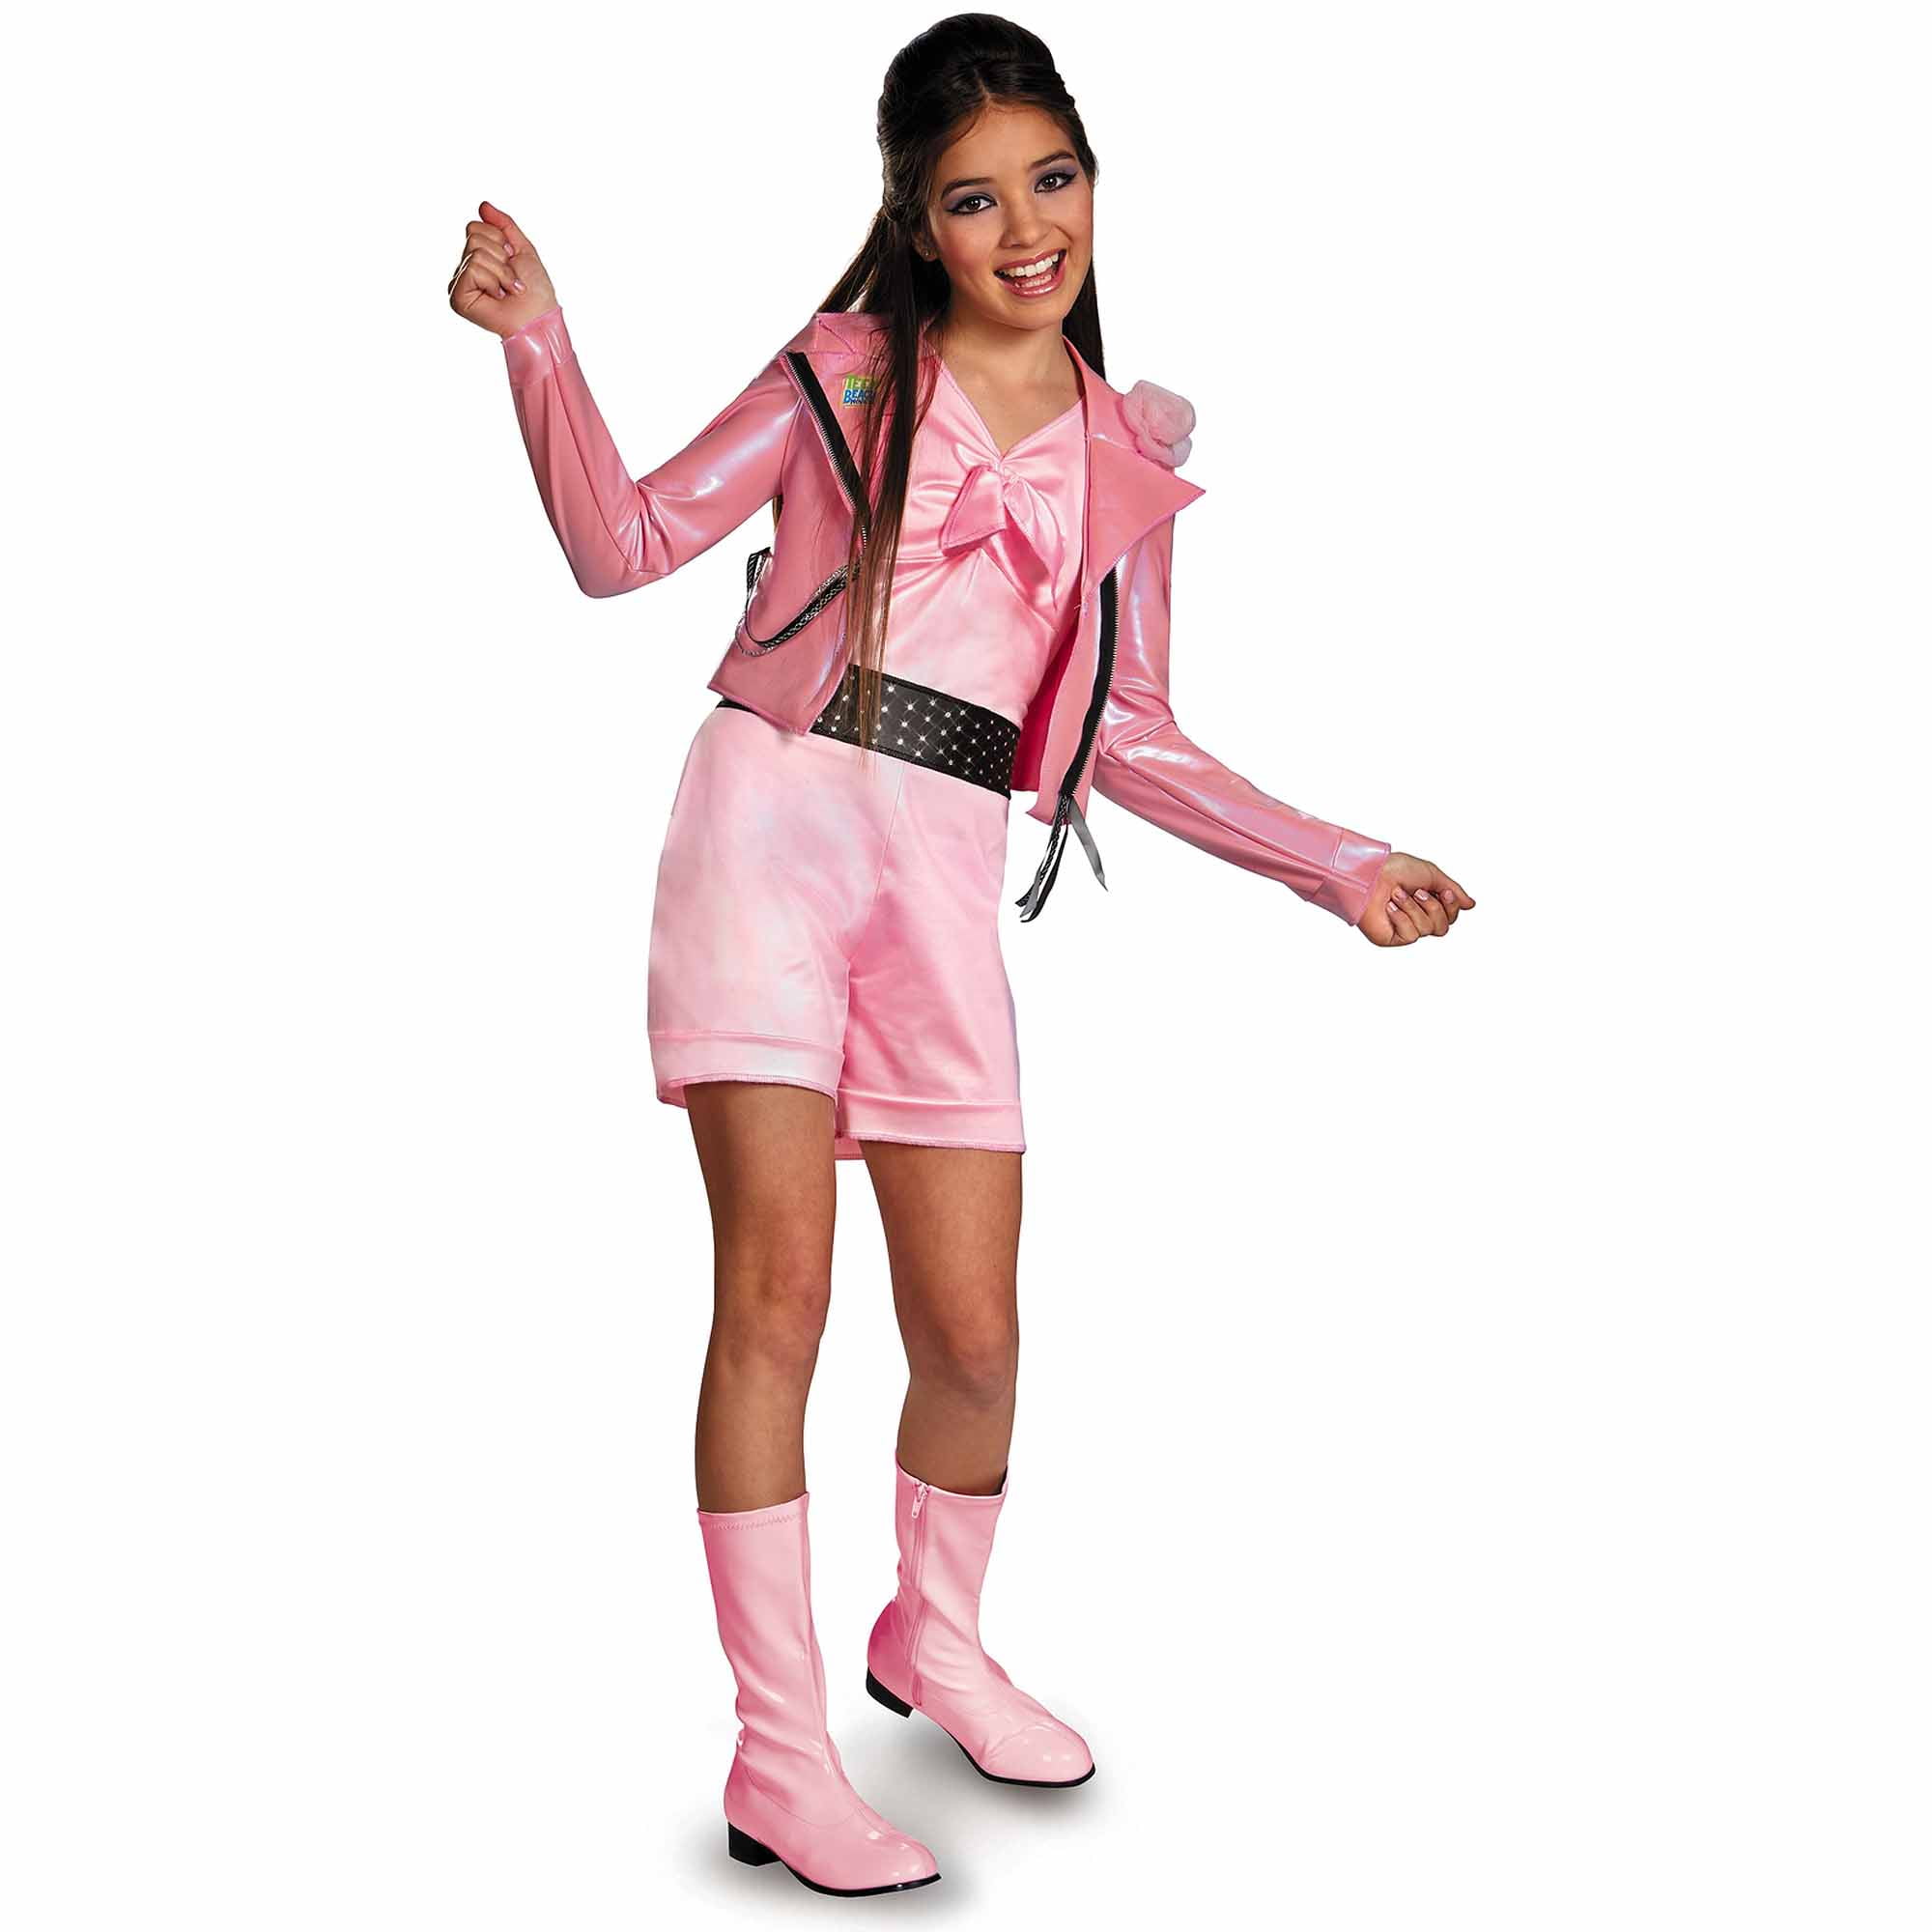 Lela Biker Deluxe Child Halloween Costume - Walmart.com